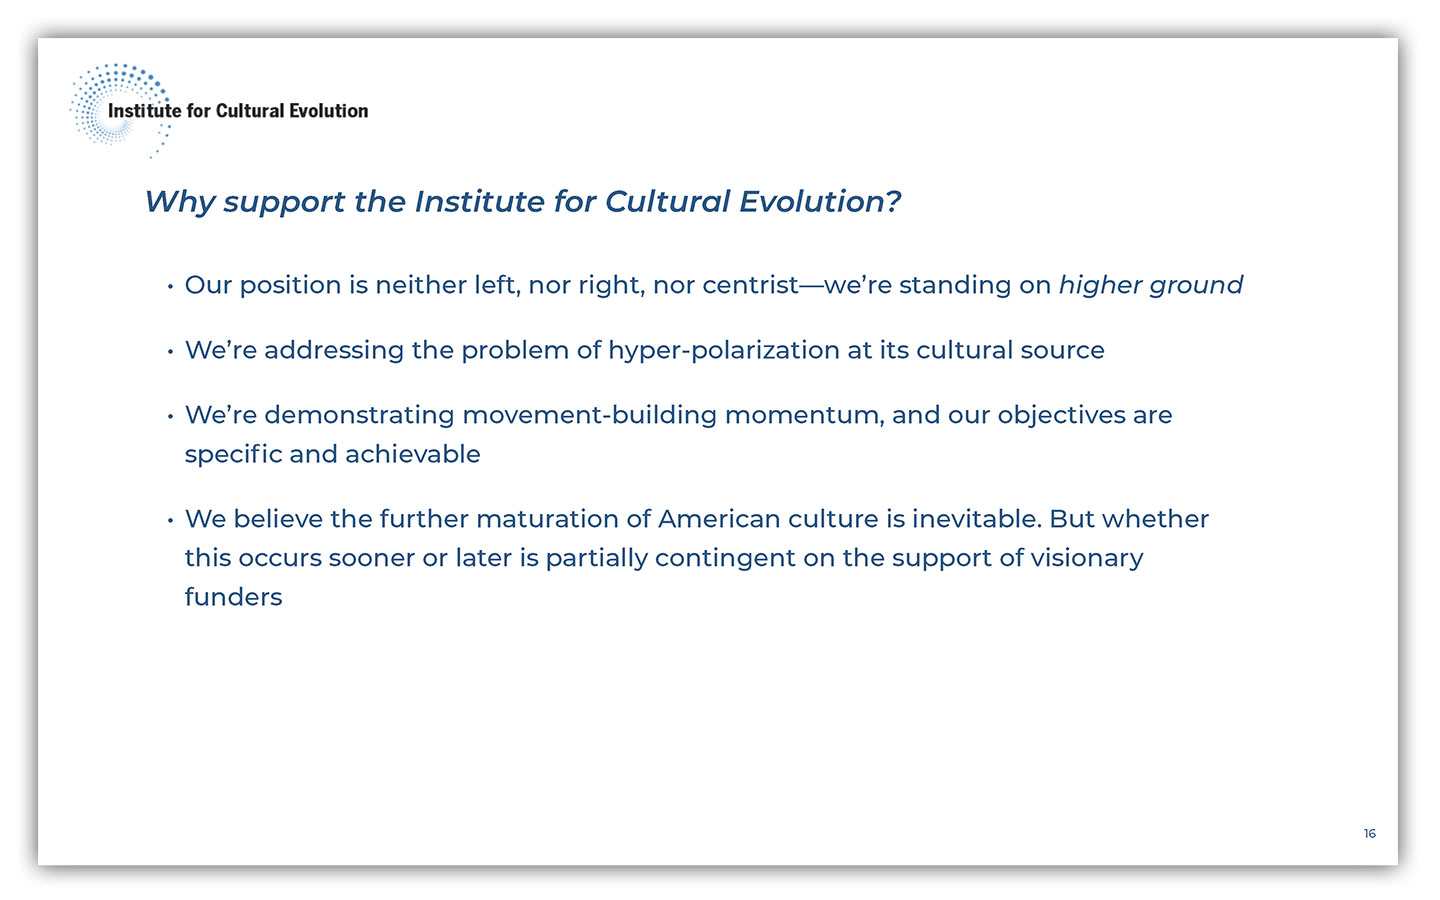 institute-for-cultural-evolution-presentation-spring-2022-16